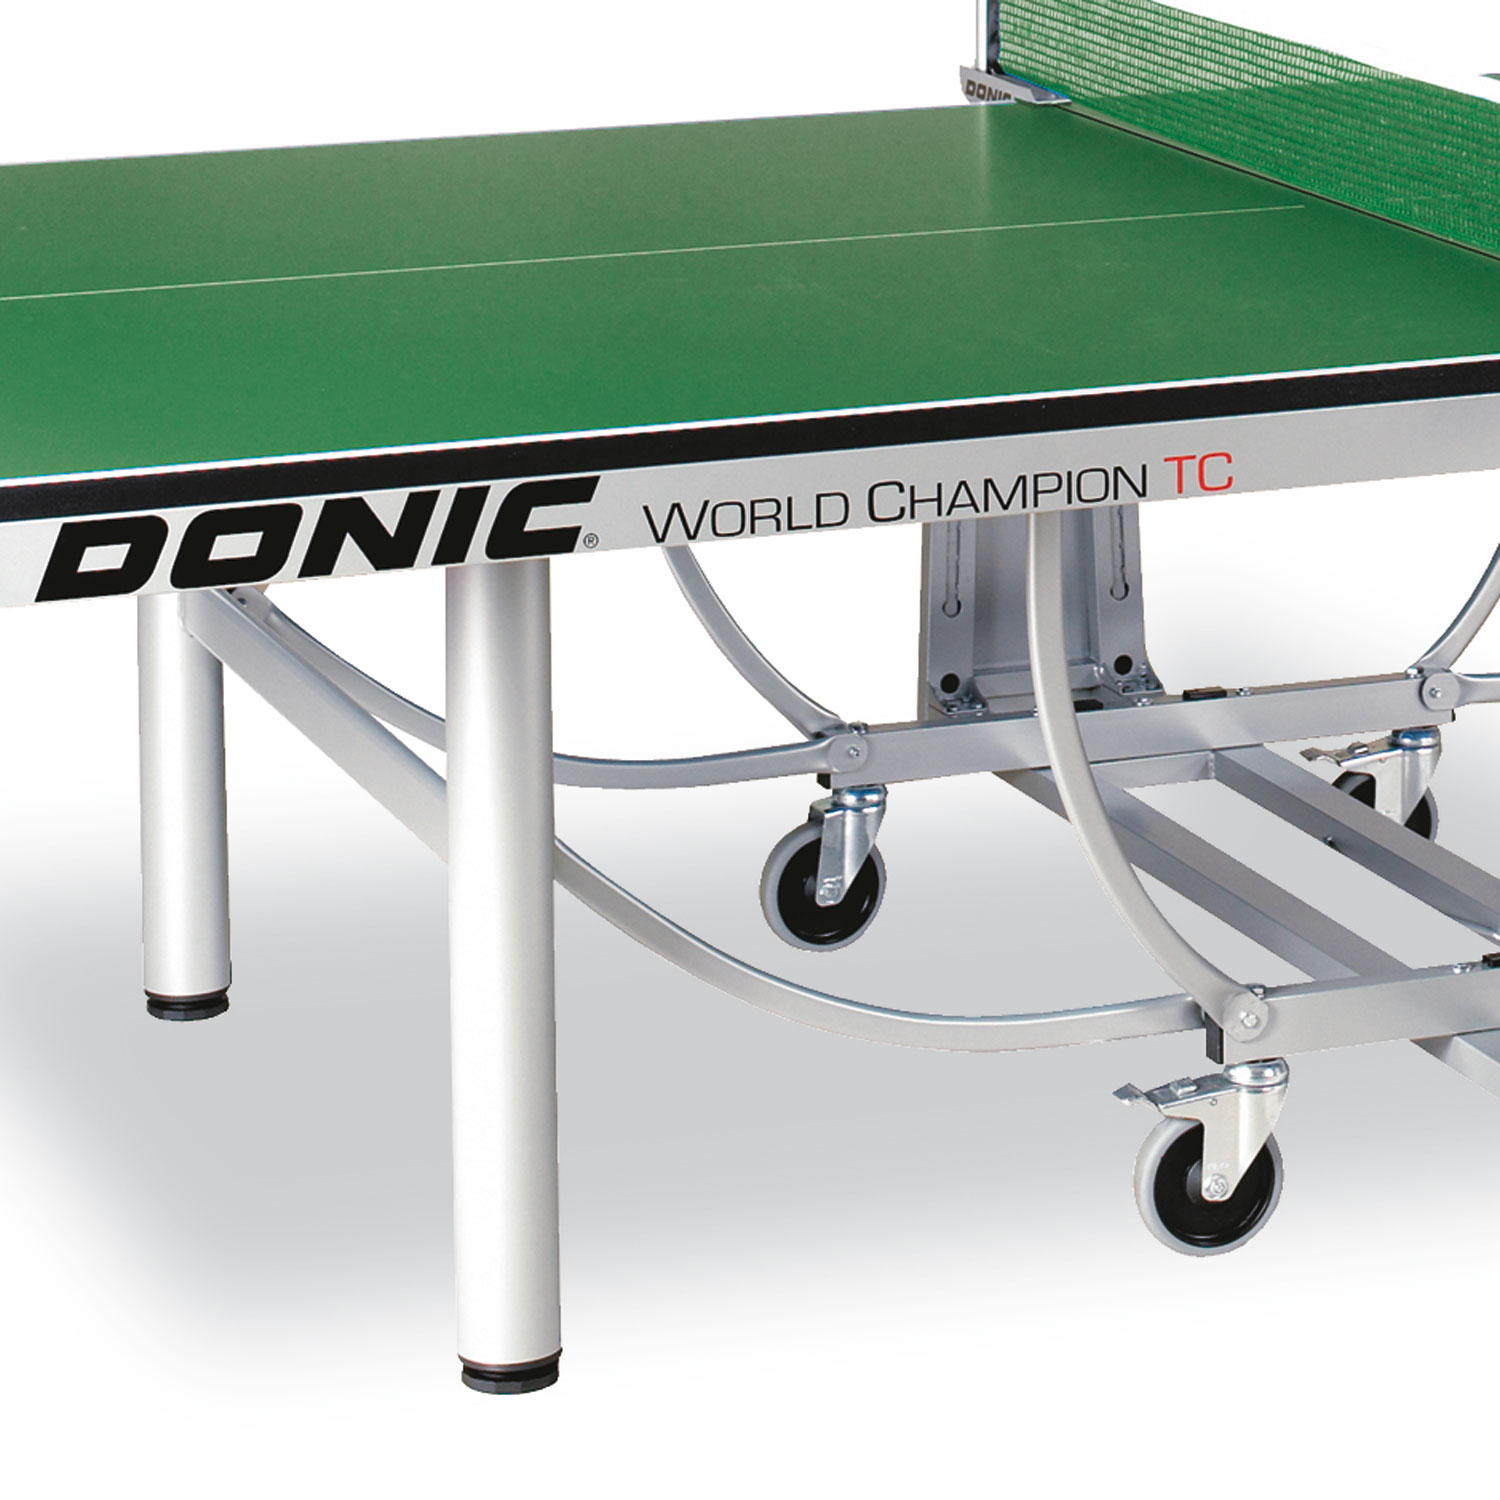 Теннисный стол Donic WORLD CHAMPION TC зеленый (без сетки), изображение 3